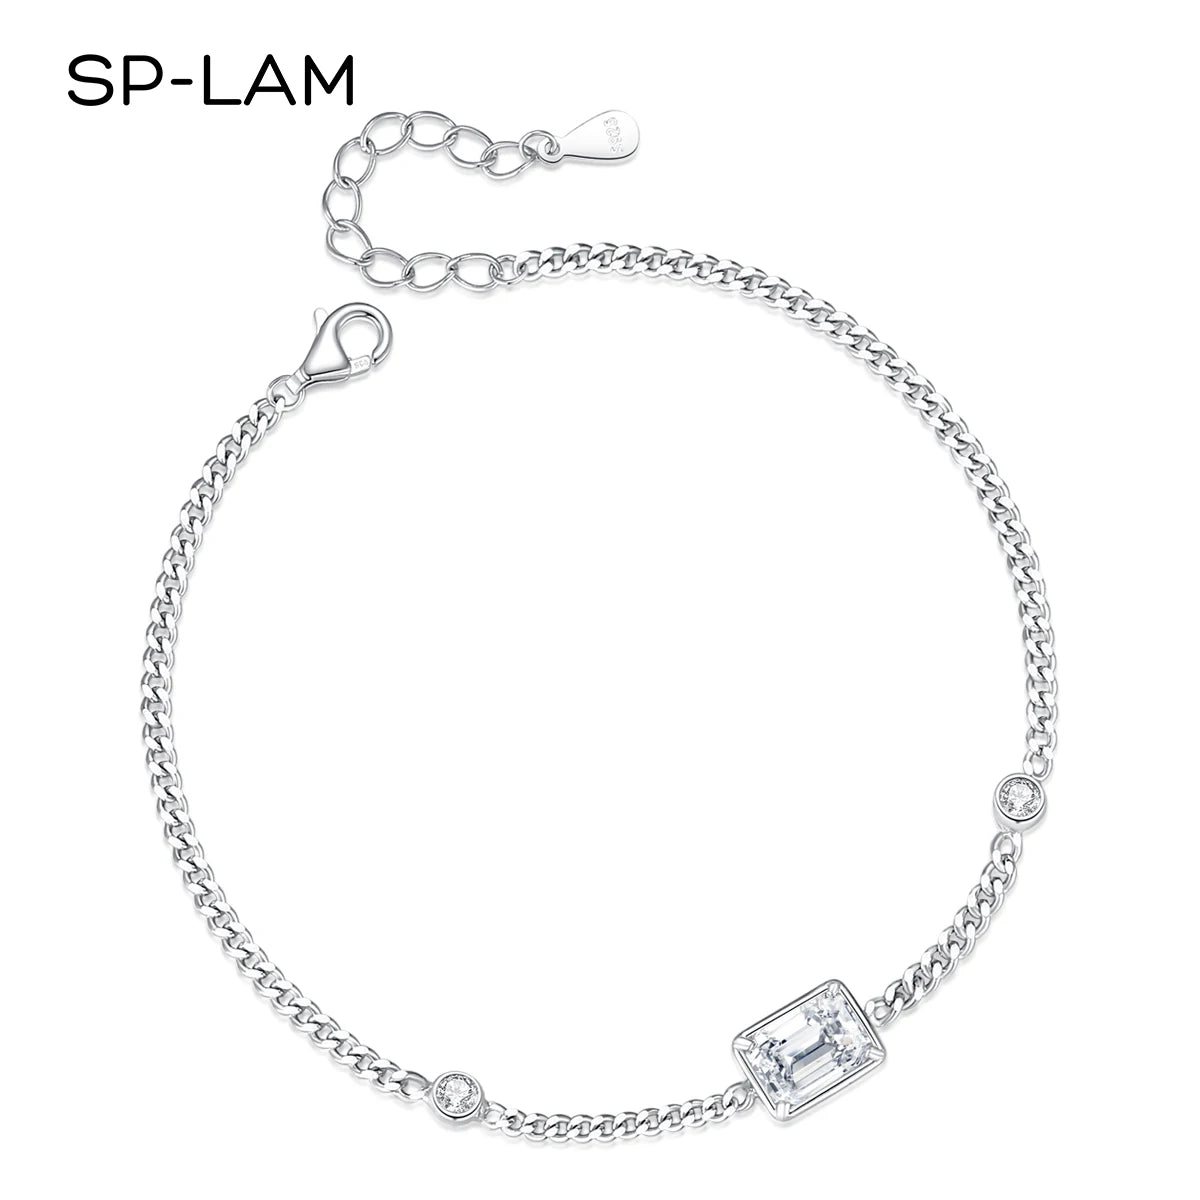 Chain Link Bracelet Moissanite 1CT Emerald Cut Real 925 Sterling Silver Women Luxury Trendy Hand Bracelets Jewelry